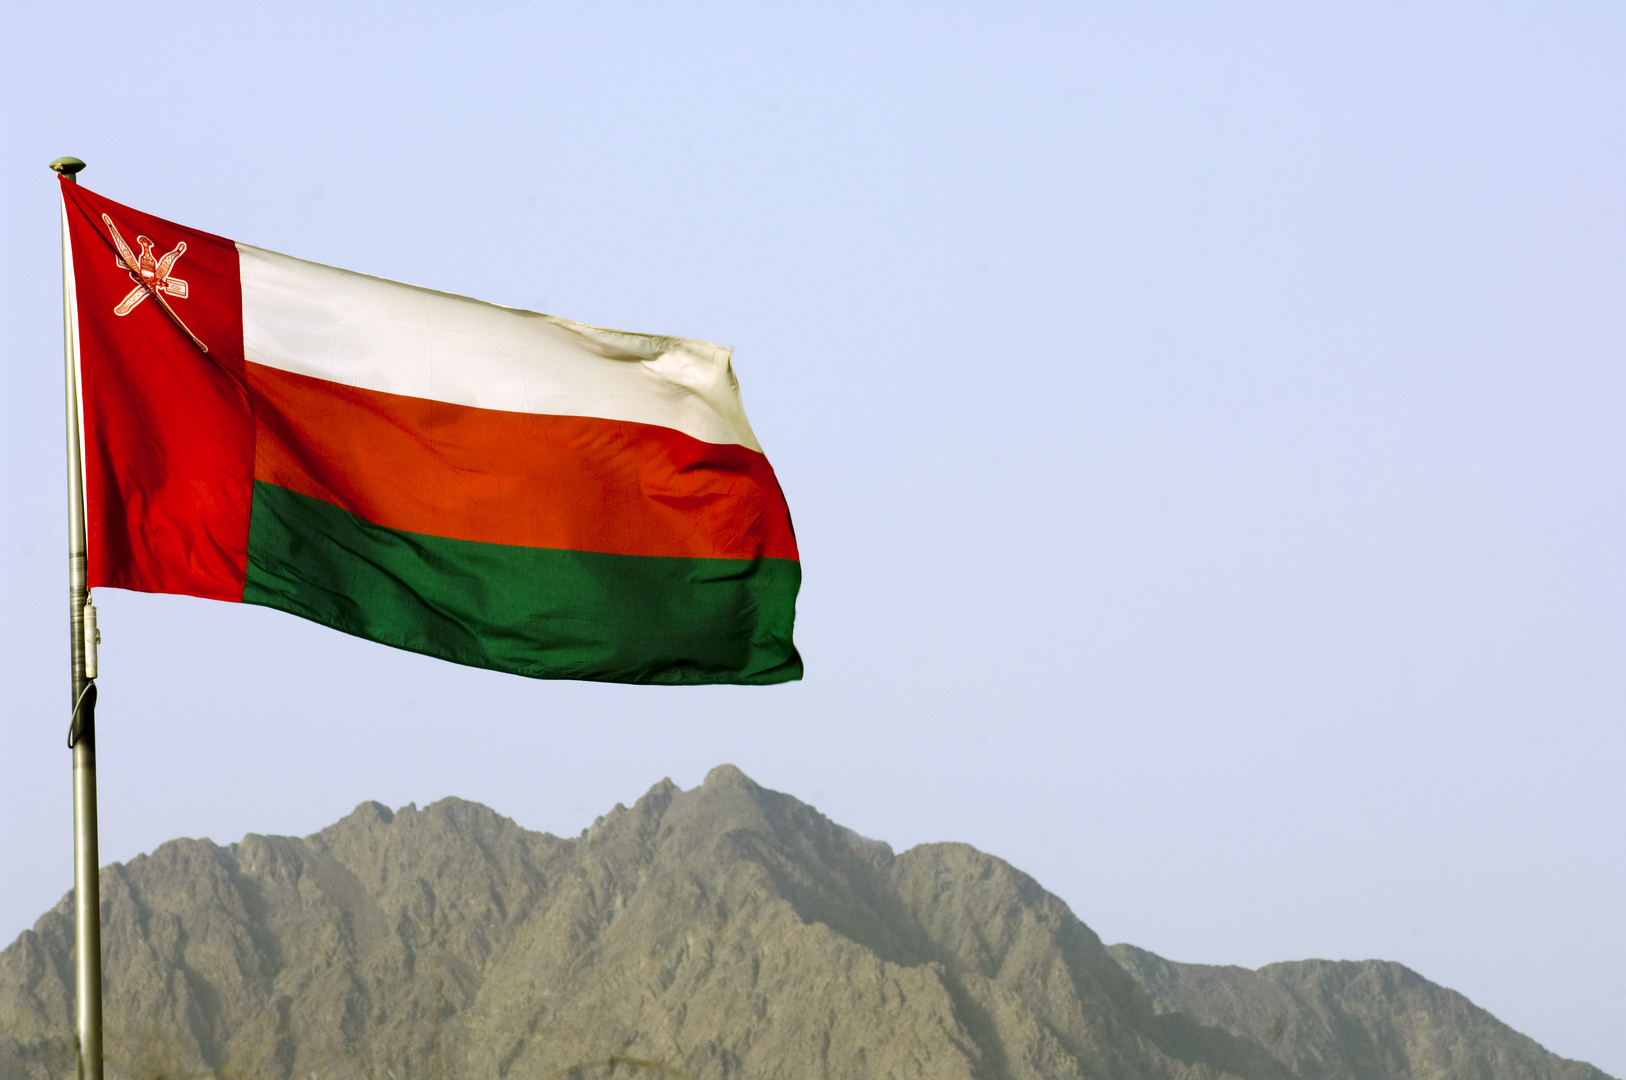 البوسعيدي يؤكد تضامن سلطنة عمان مع سوريا والعراق وأمنهما وسيادتهما ووحدة أراضيهما